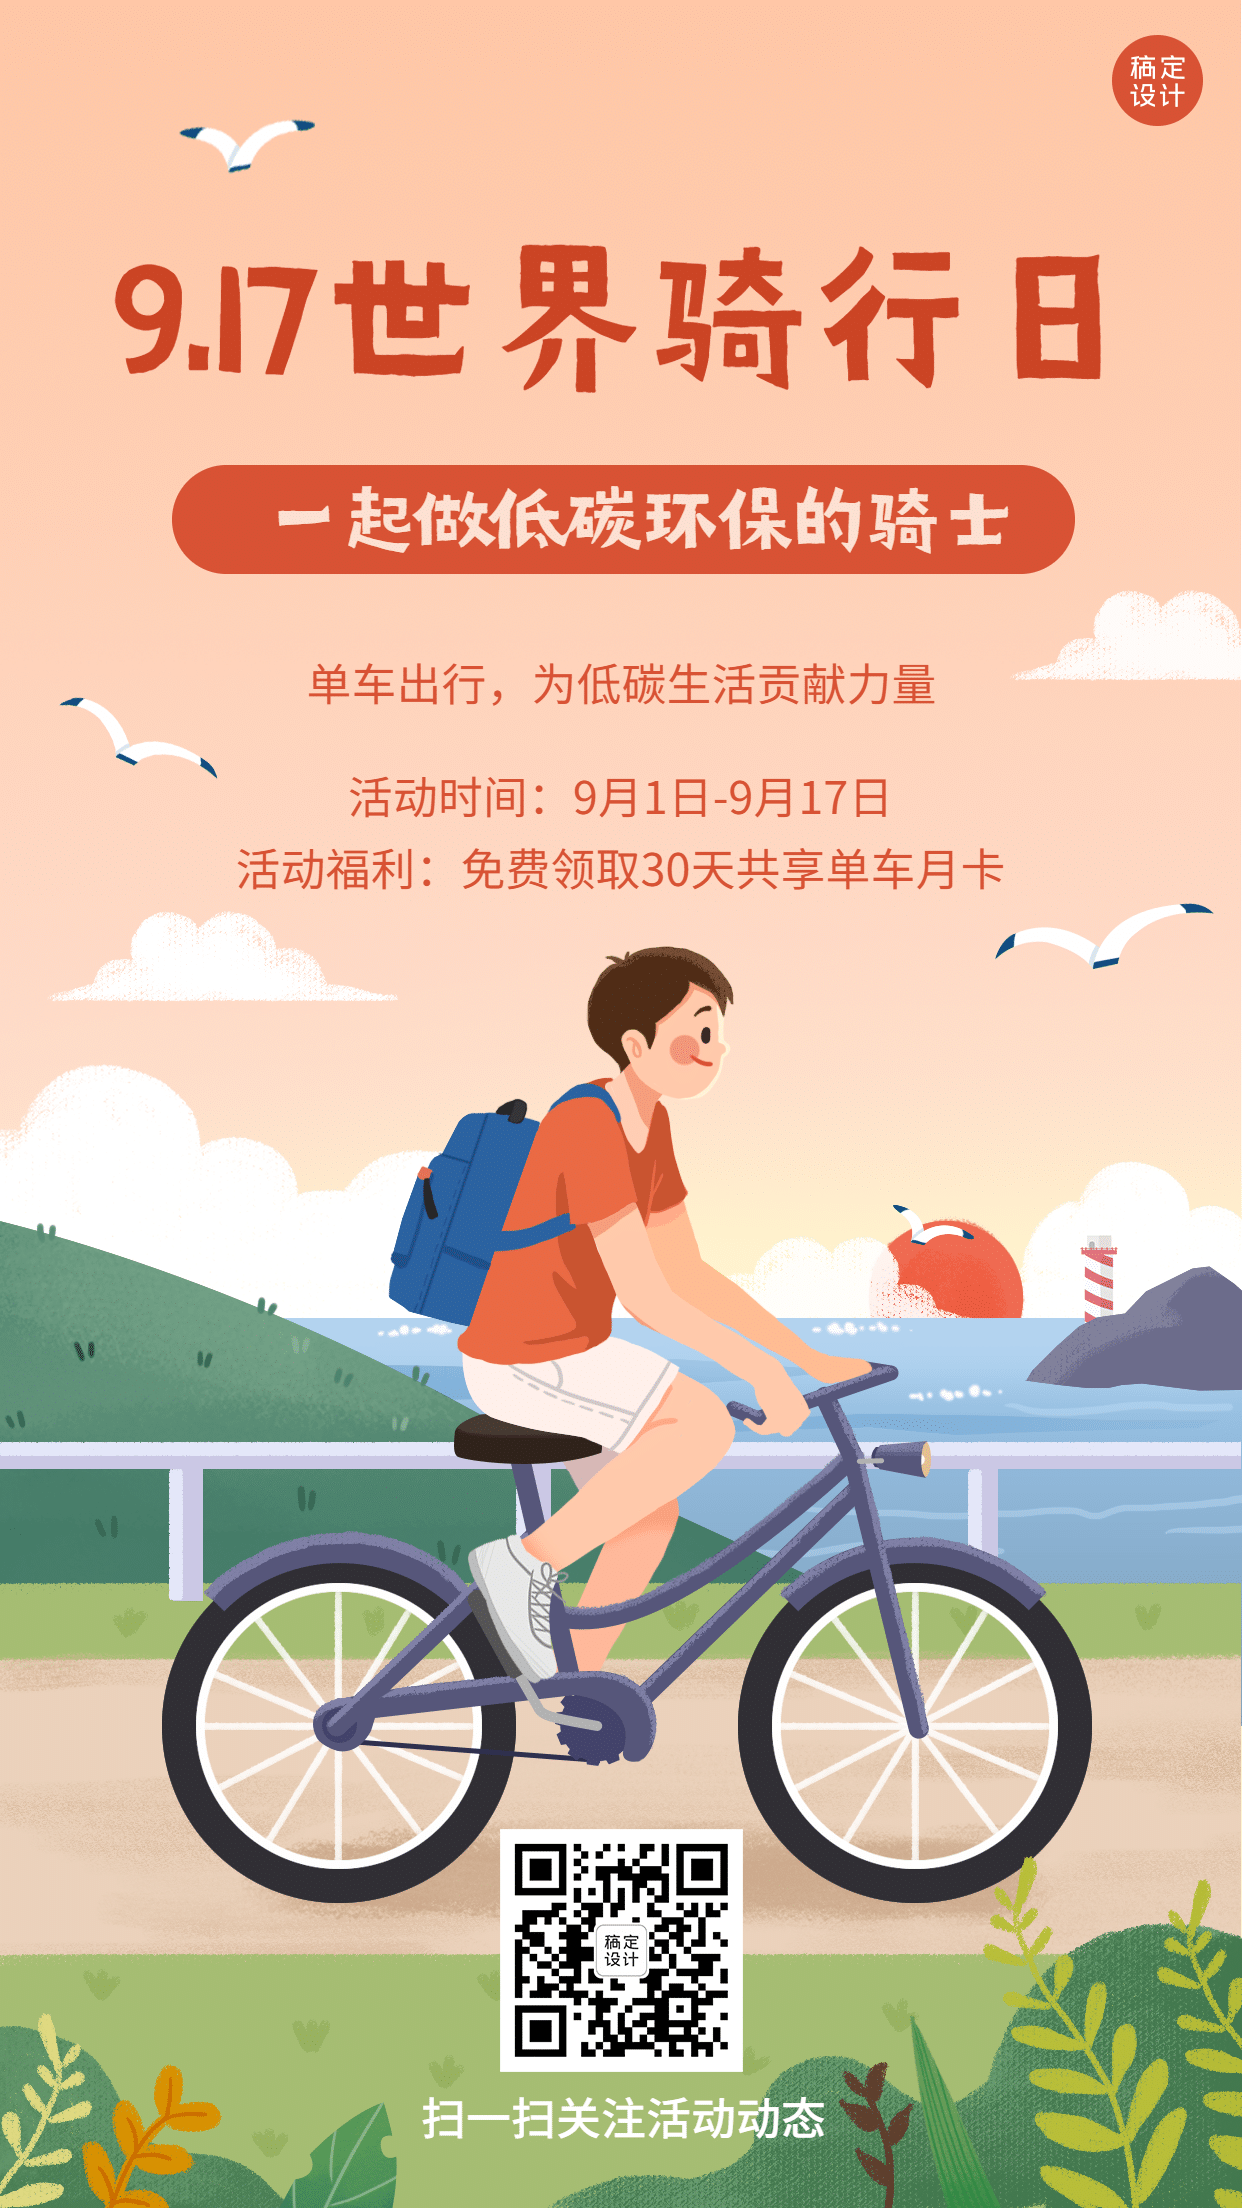 世界骑行日运动环保宣传手绘手机海报预览效果